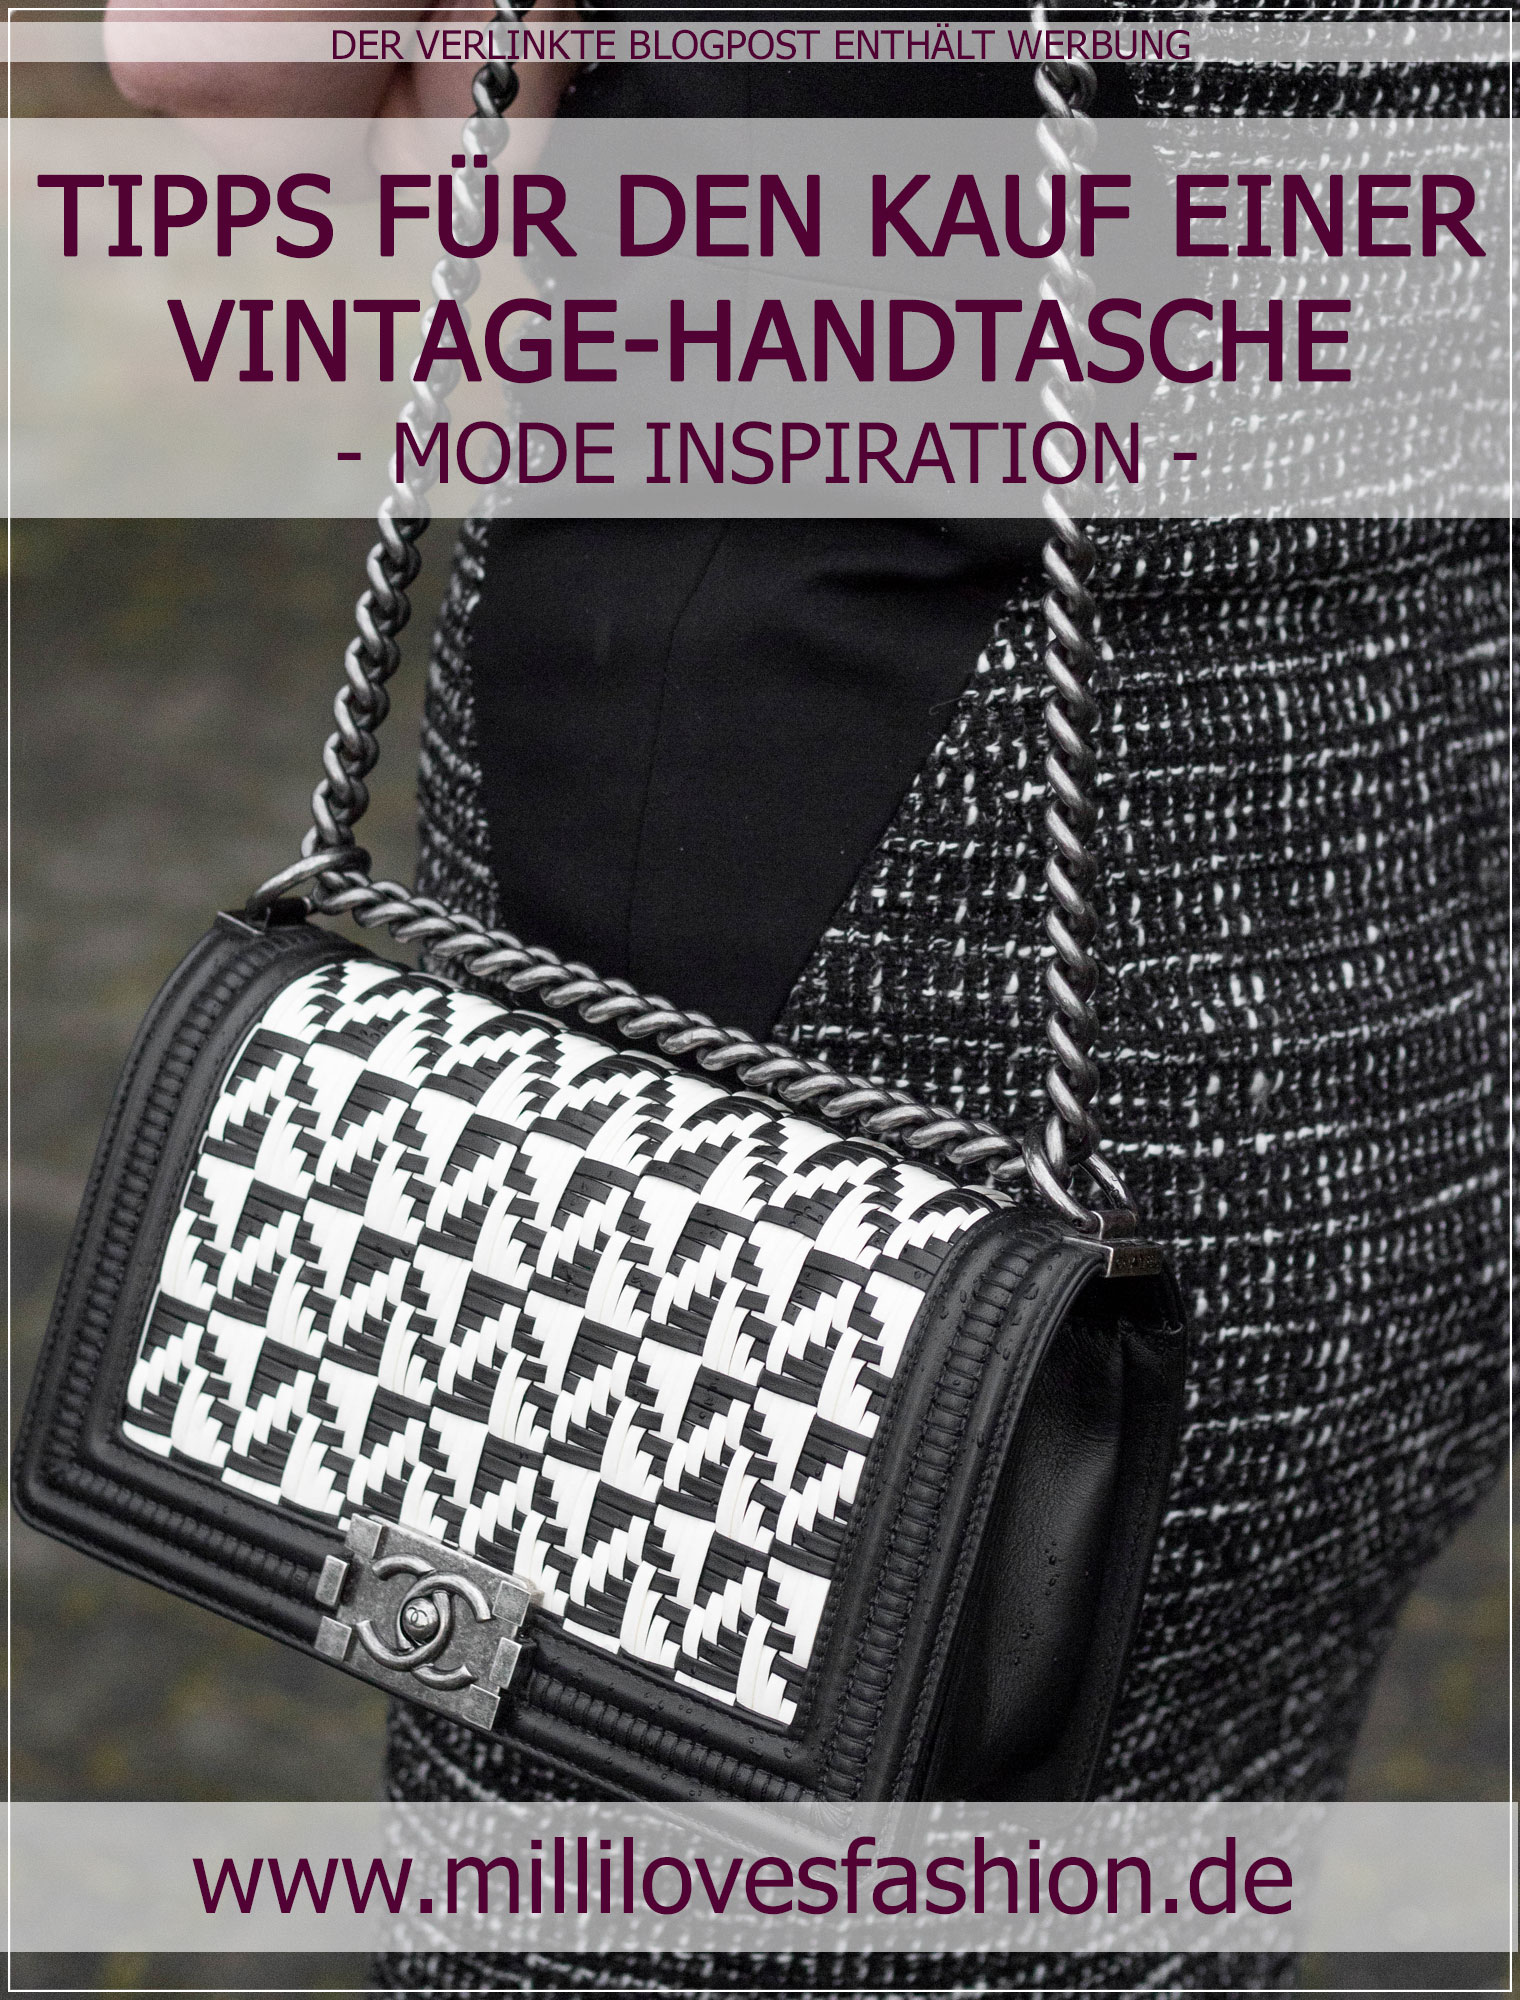 Vintage-Handtasche, Shopping-Tipps, Designer-Handtasche, Vintage-Chanel, preloved Designerteil, Fashionblog, Vintage Chanel Boy Bag, Online-Vintage-Shop, Vintage Tasche online kaufen